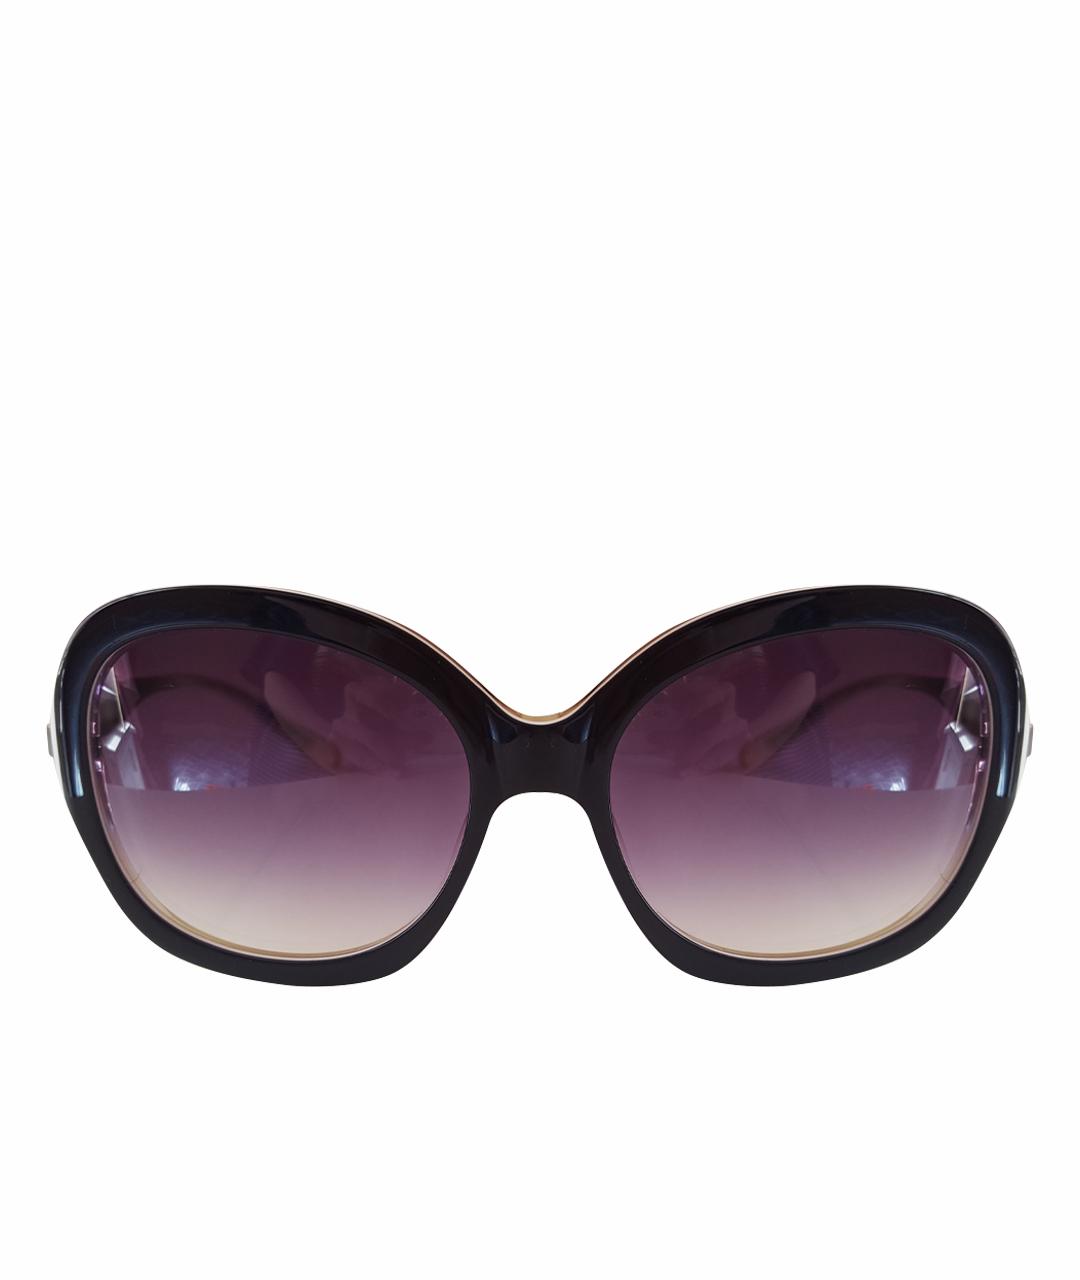 BADGLEY MISCHKA Фиолетовые пластиковые солнцезащитные очки, фото 1